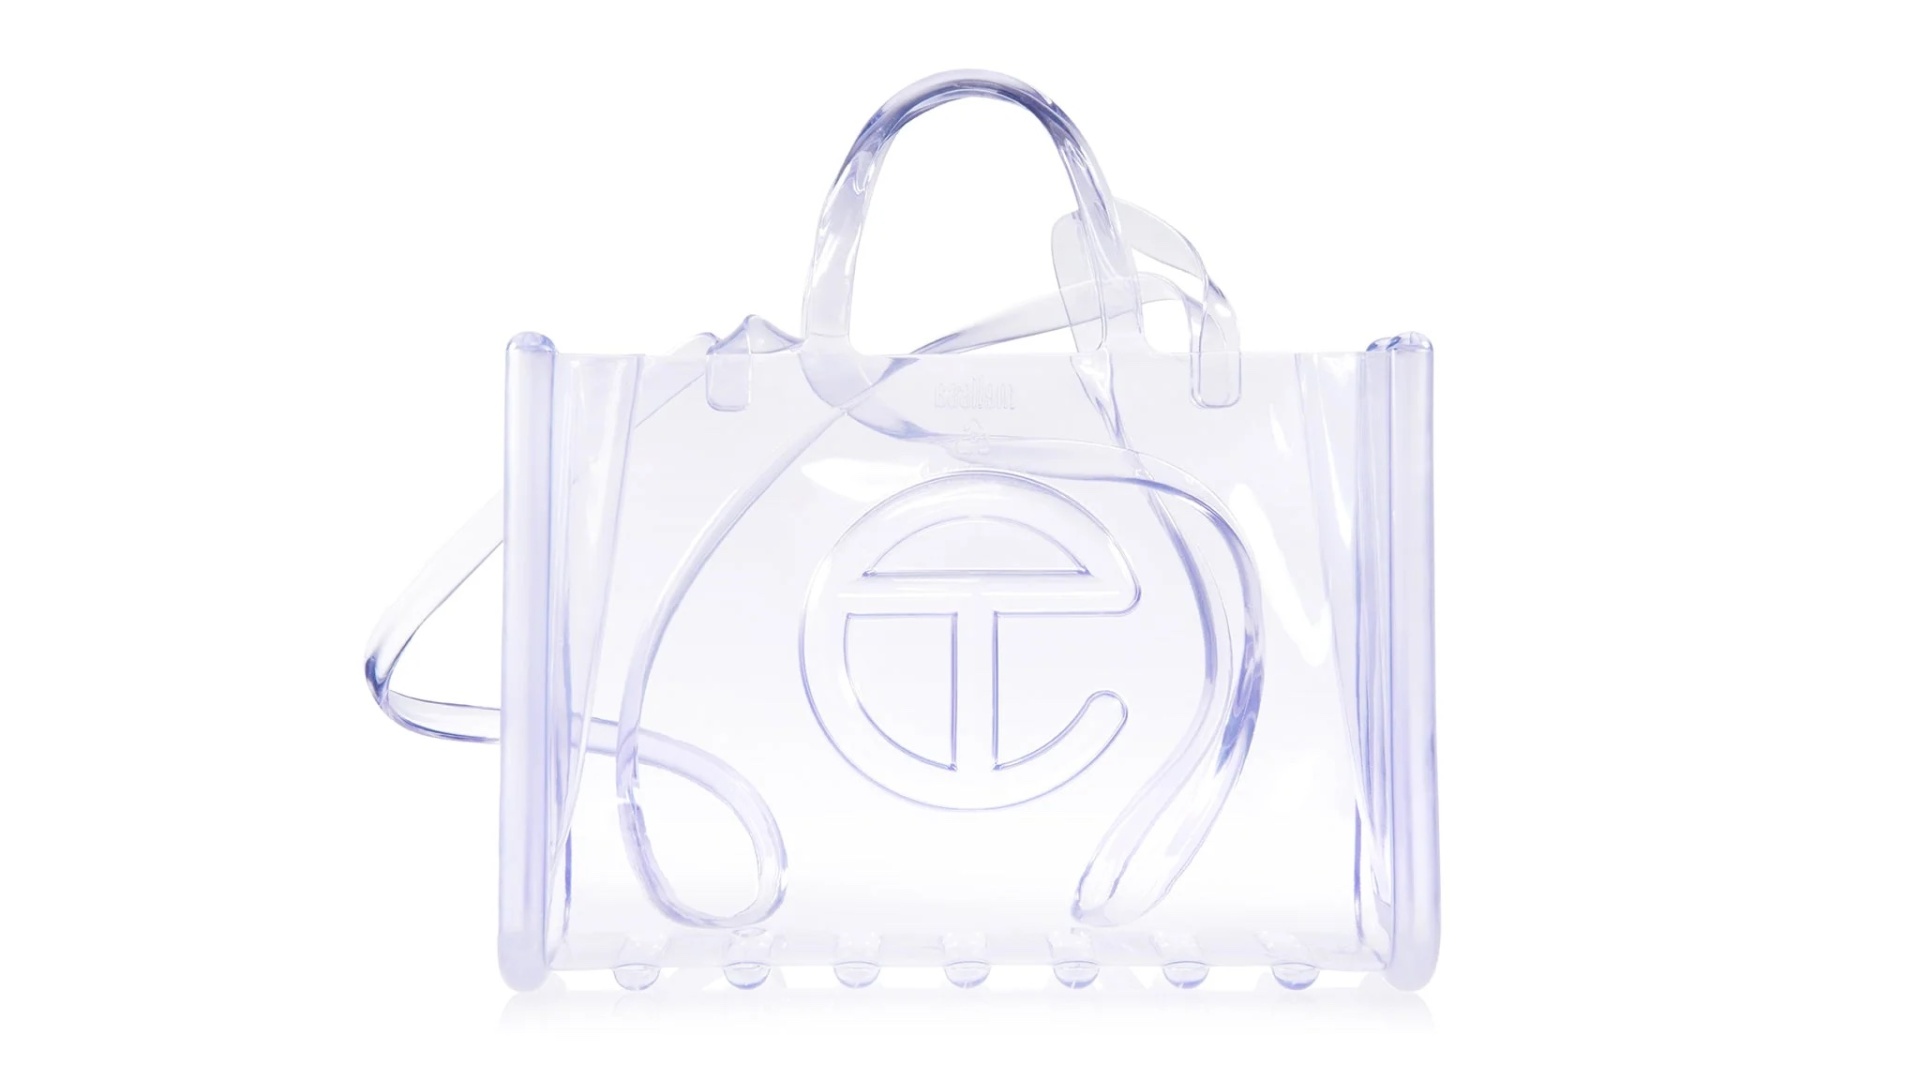 Handmade Louis Vuitton clear stadium bag